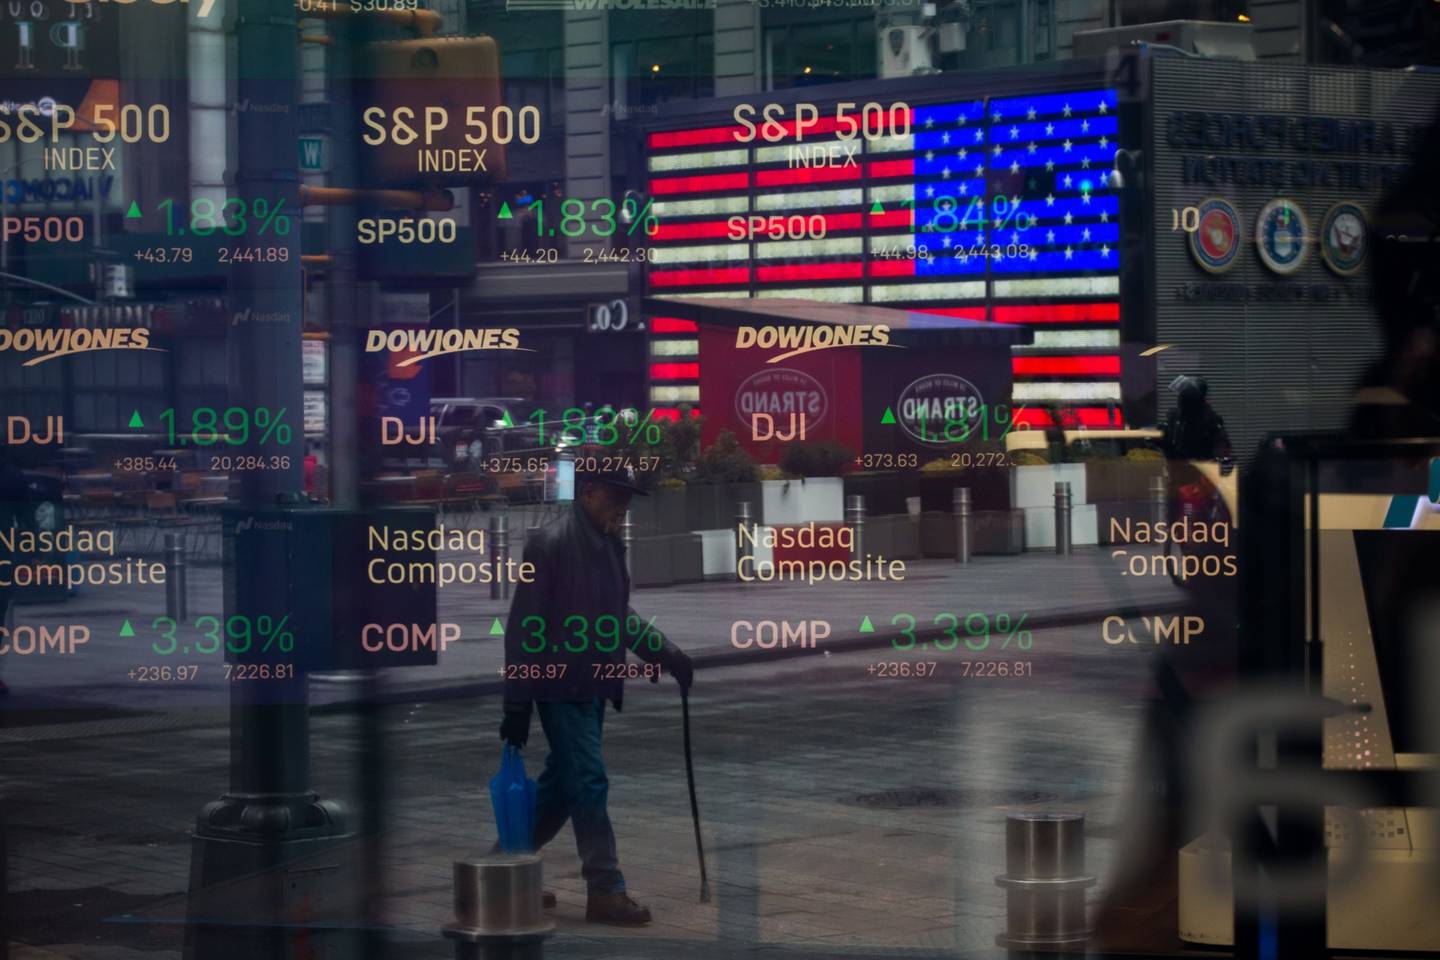 Los monitores exhiben información del mercado de valores, vistos a través de la ventana del Nasdaq MarketSite en Times Square, Nueva York, EE. UU.